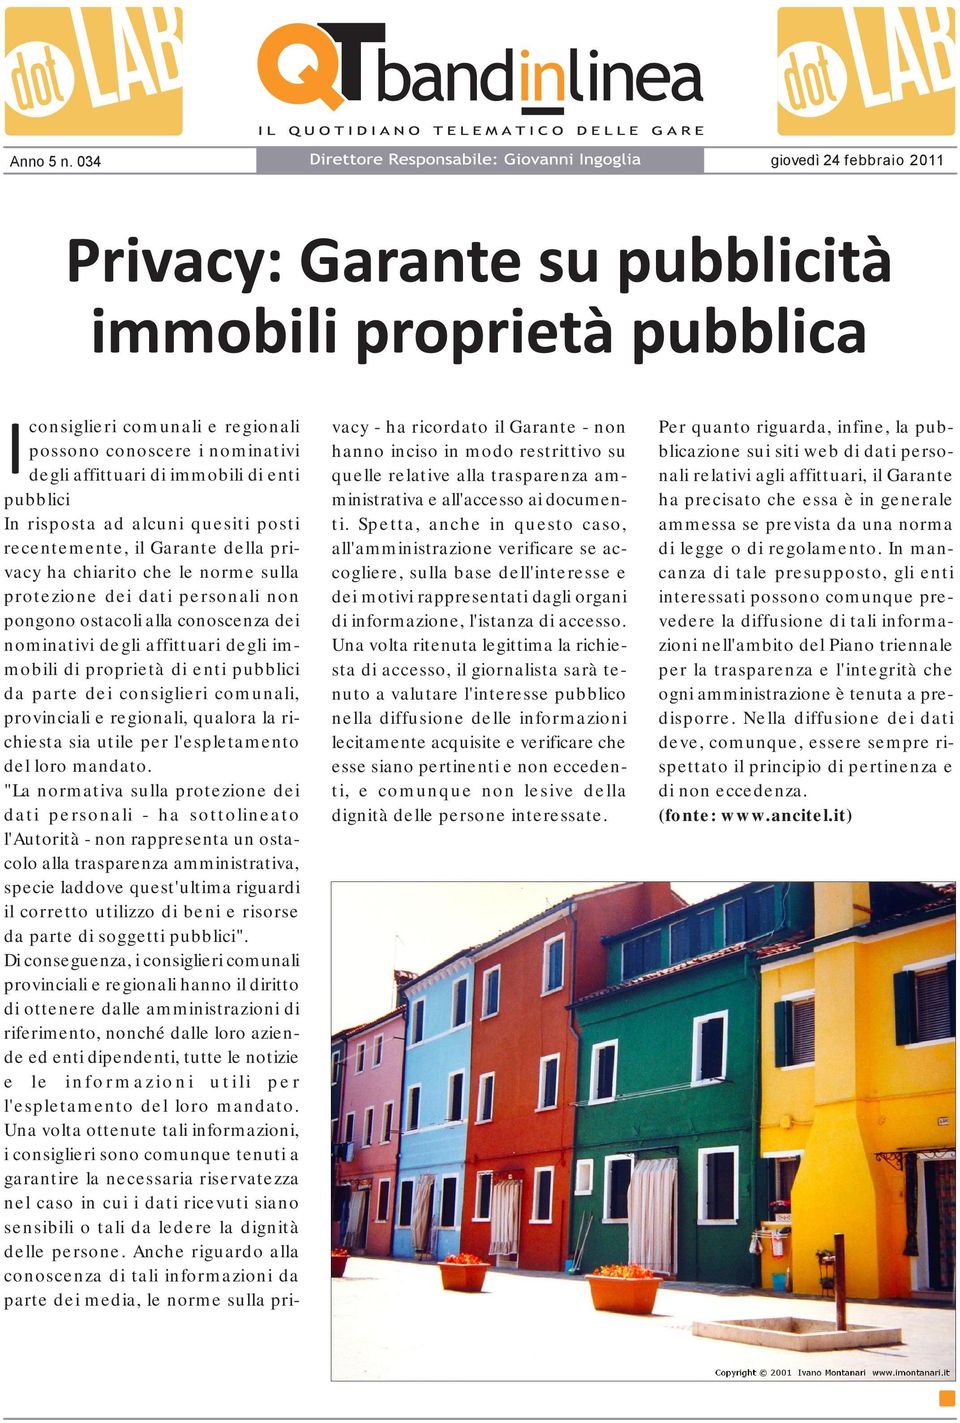 della privacy ha chiarito che le norme sulla protezione dei dati personali non pongono ostacoli alla conoscenza dei nominativi degli affittuari degli immobili di proprietà di enti pubblici da parte